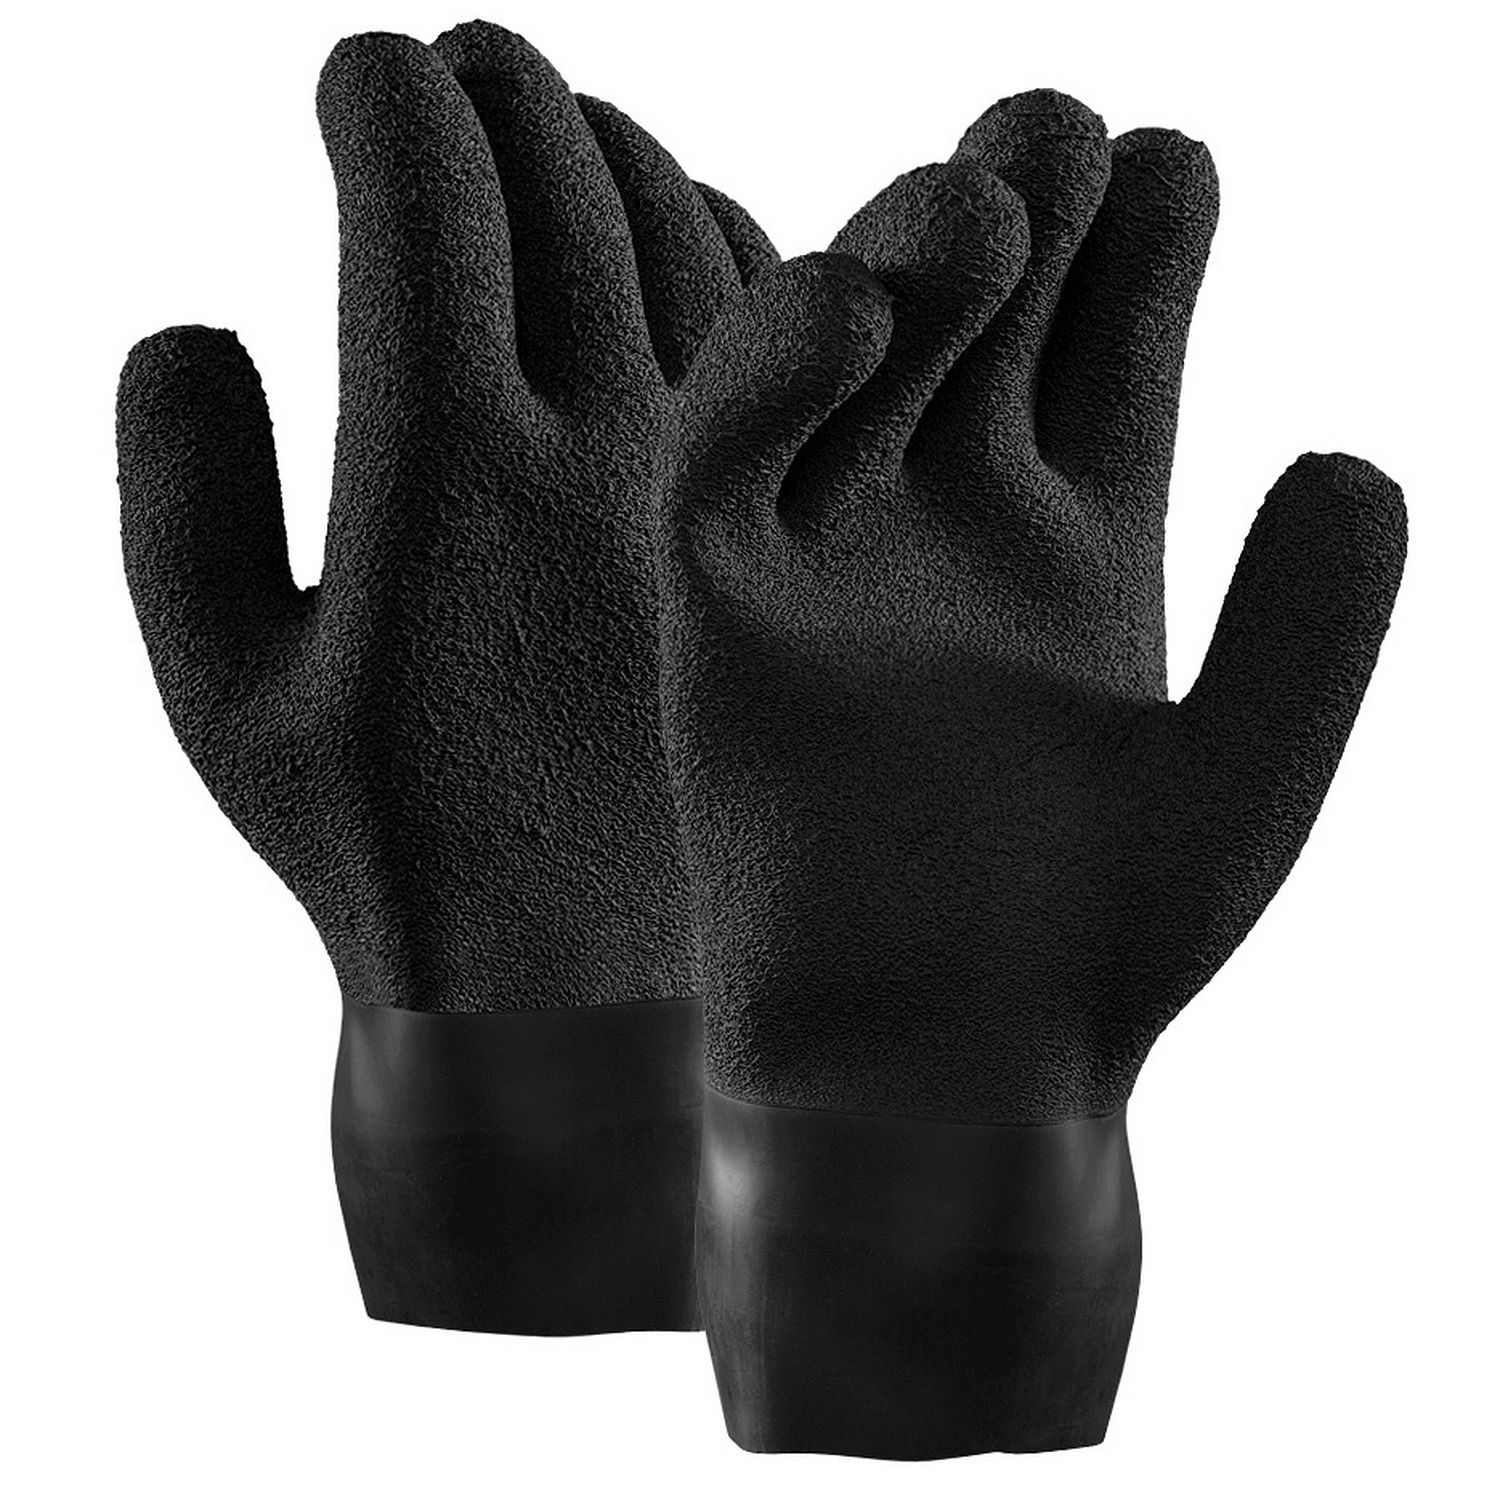 Suché rukavice Latex DryGlove HD Short